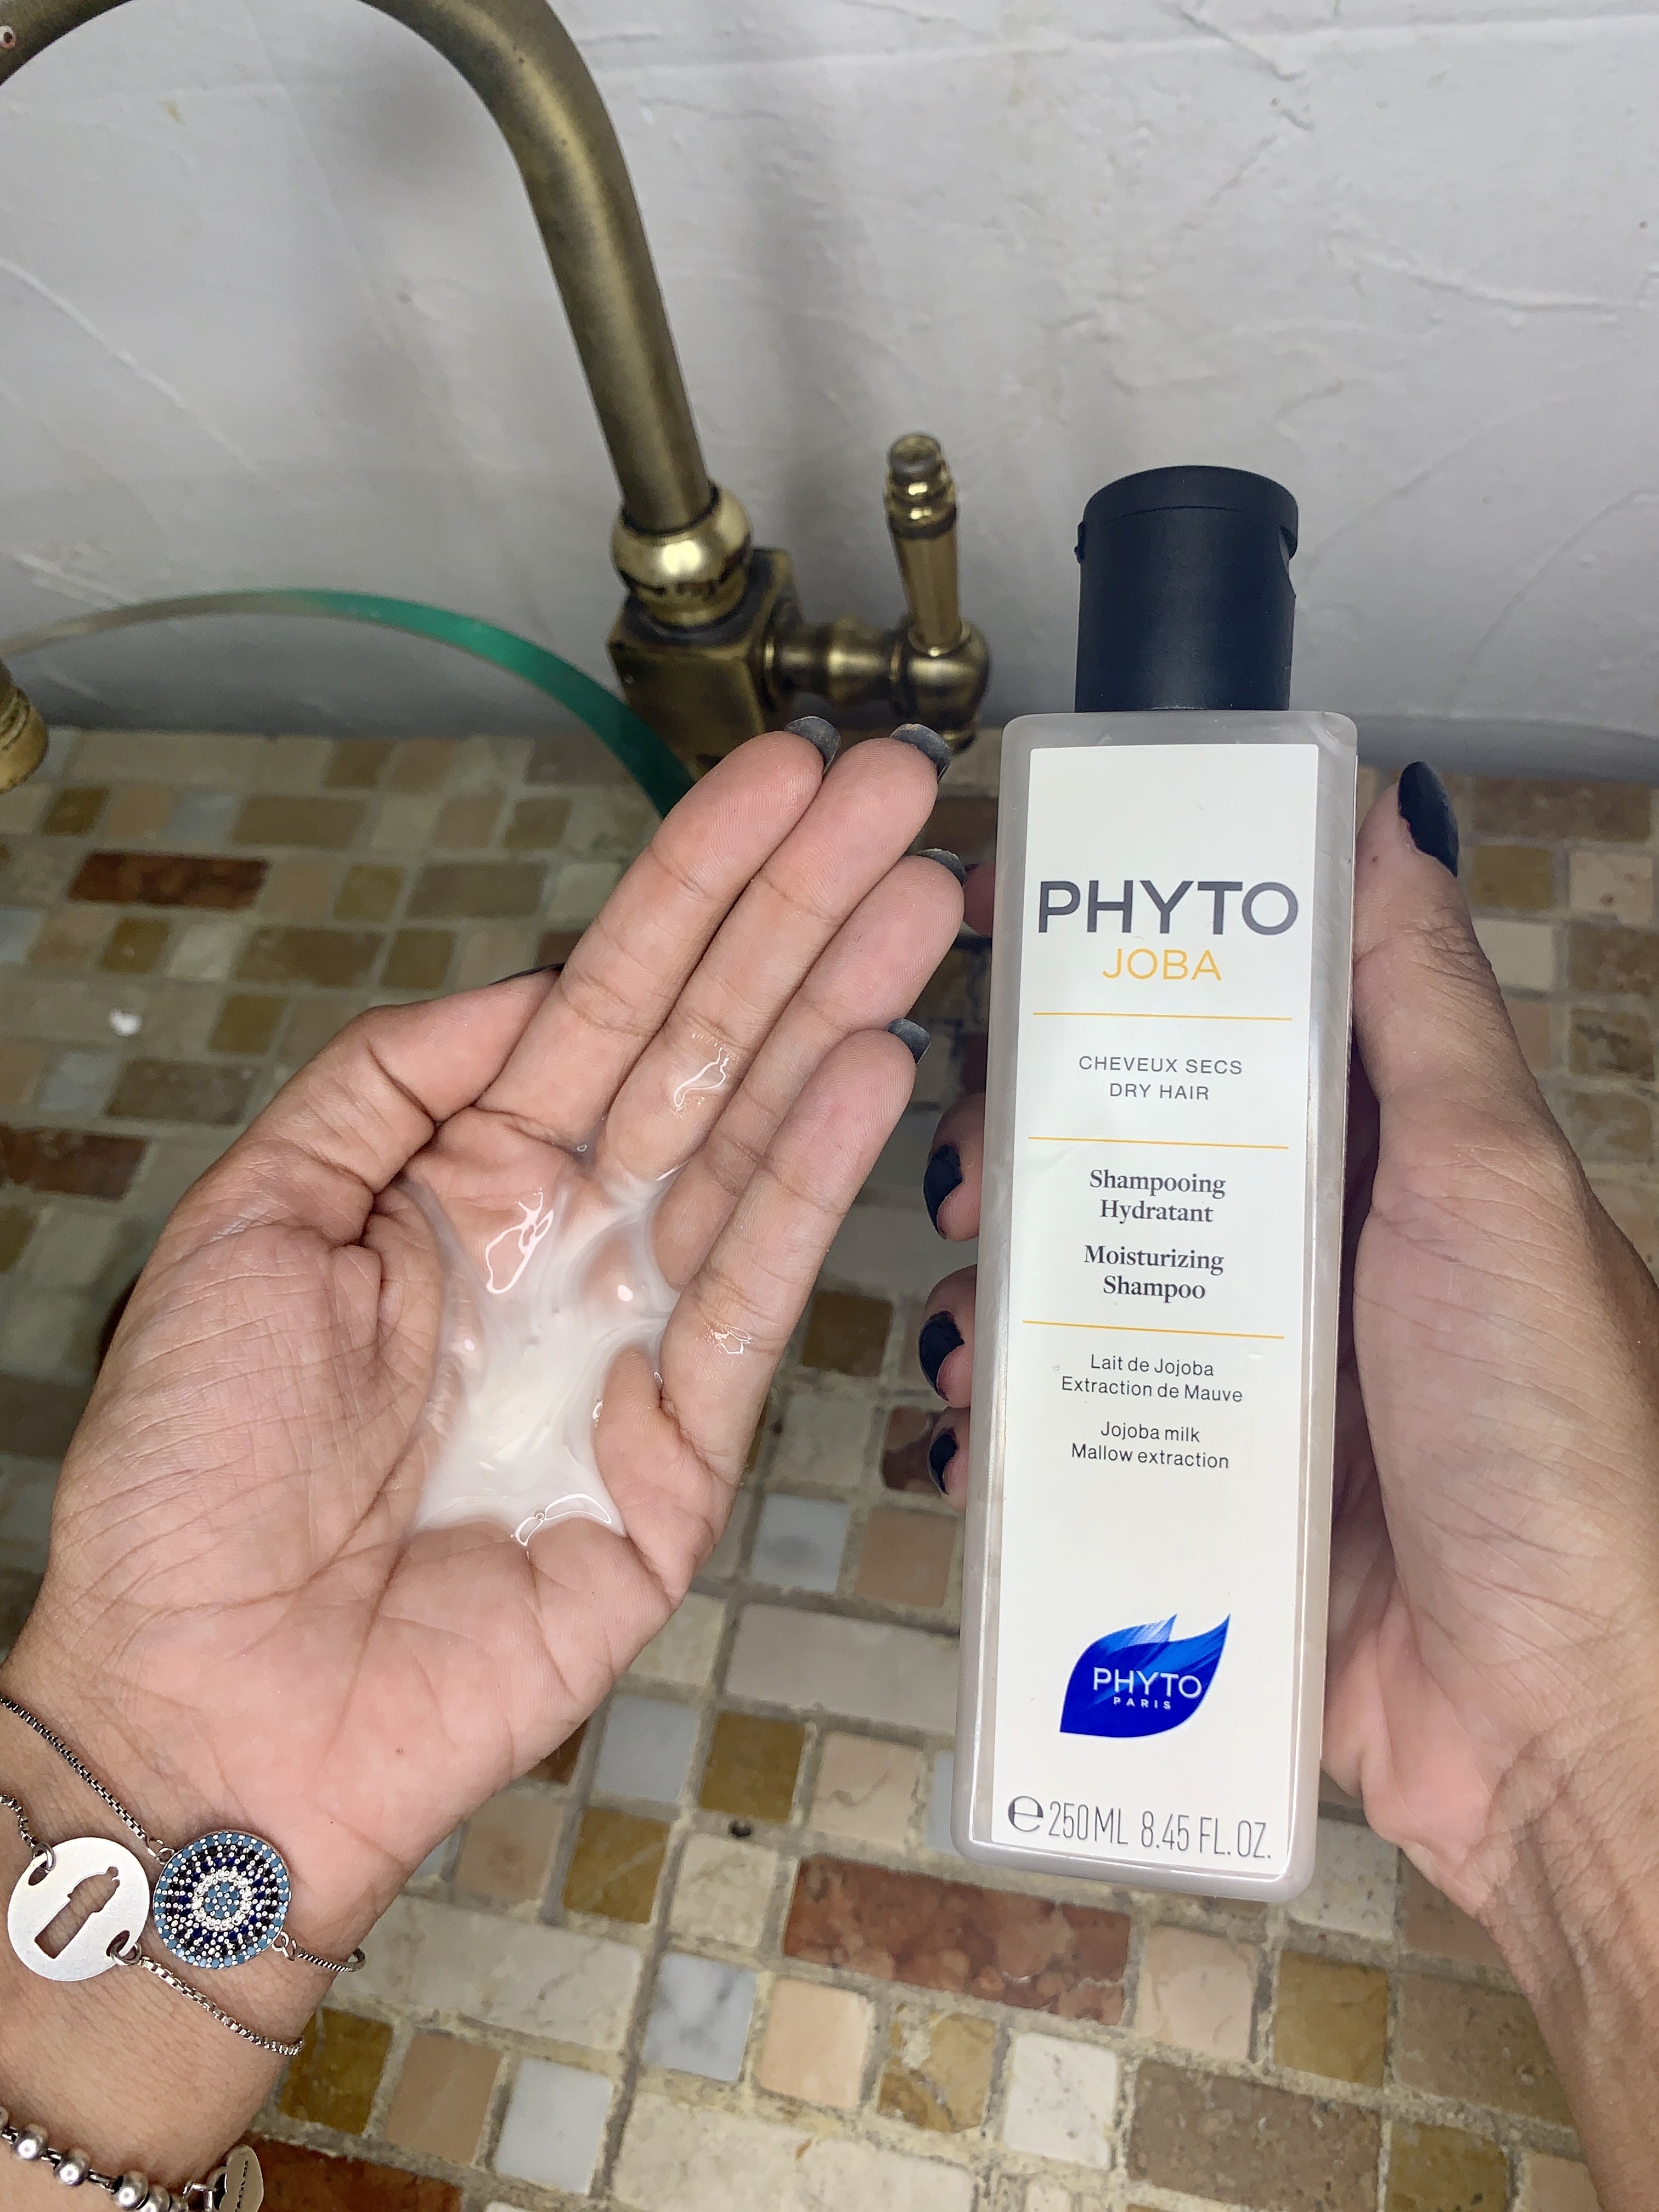 Textura do Shampoo Hidratante Phytojoba, Phyto (Foto: Acervo Pessoal)